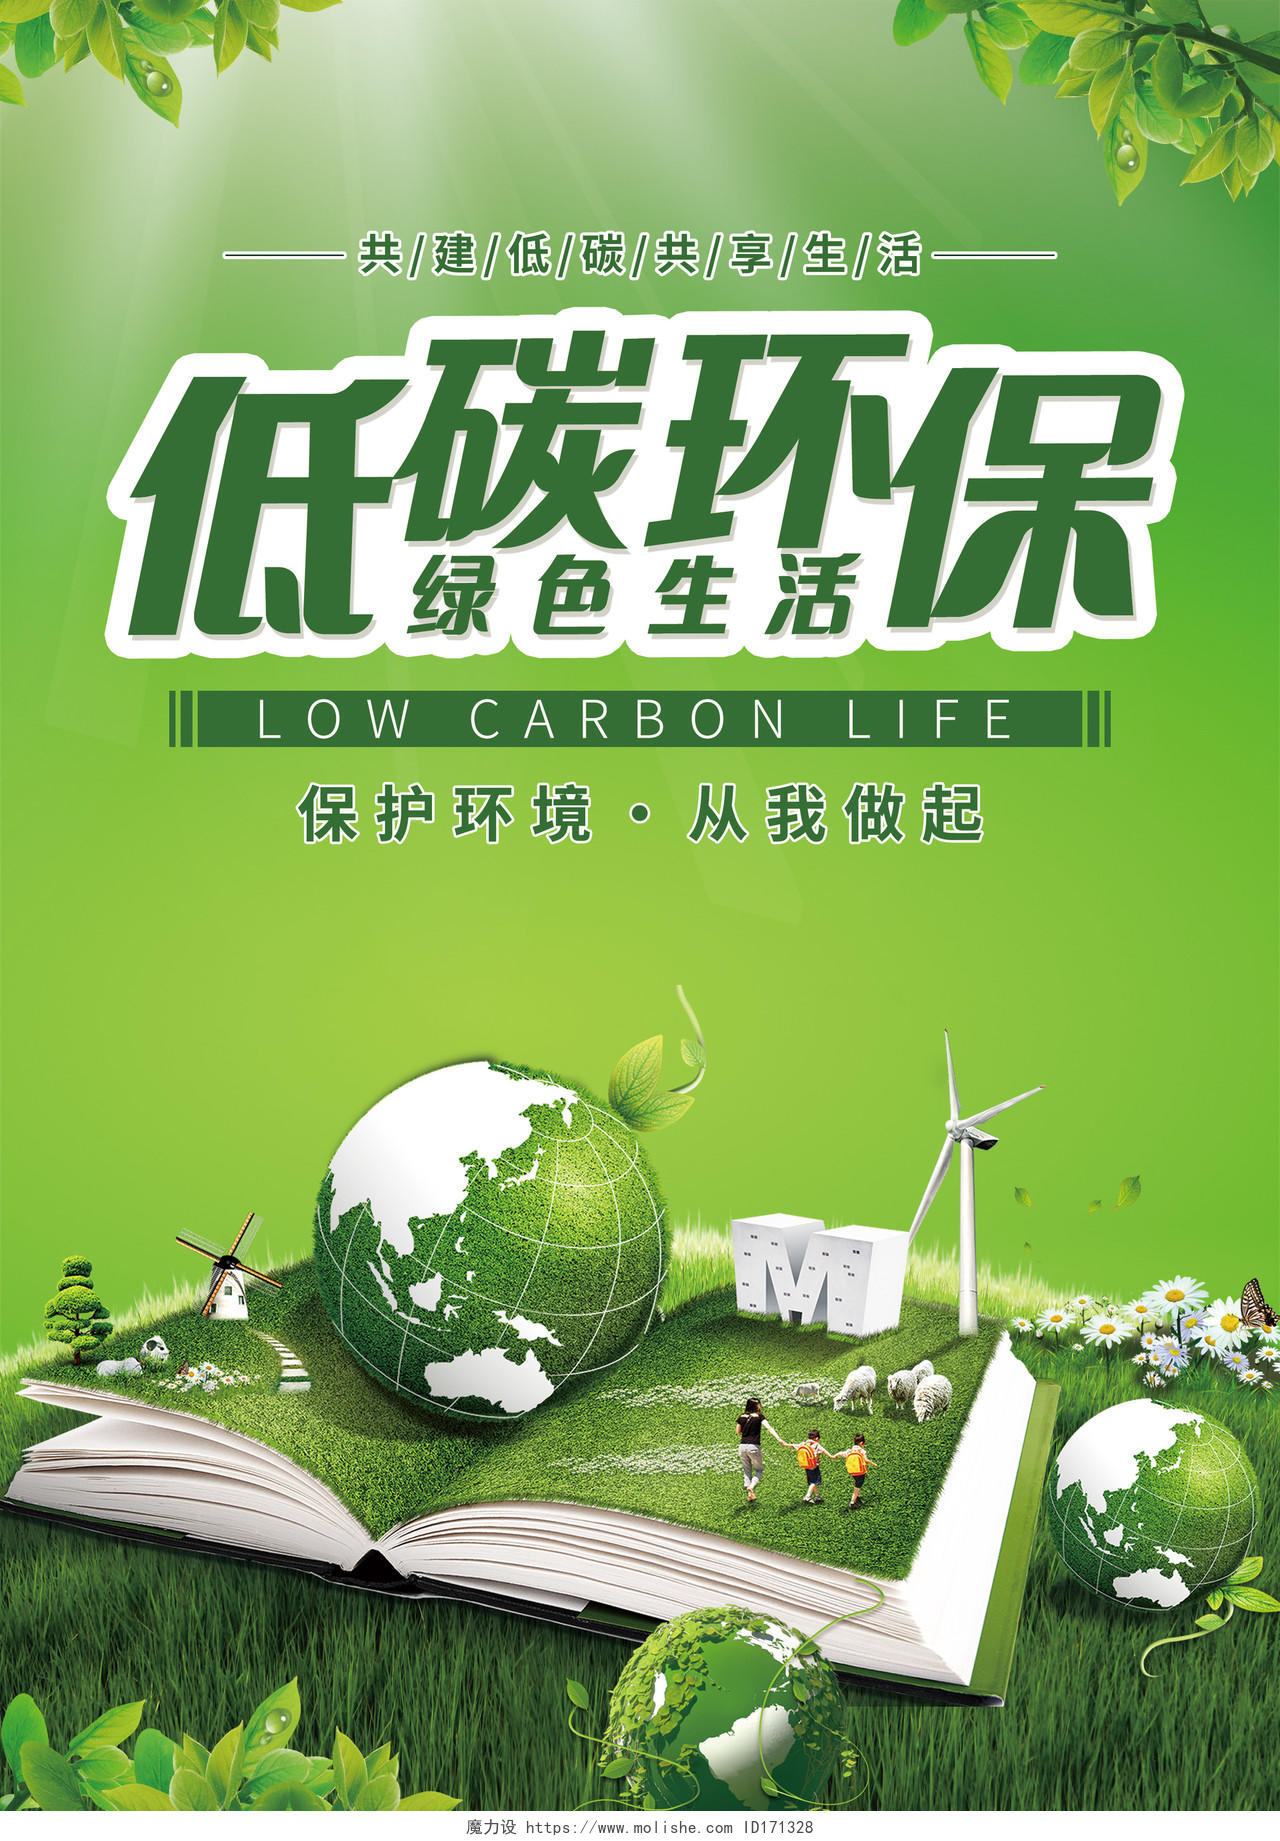 青绿色低碳环保绿色生活宣传单模板环保宣传单